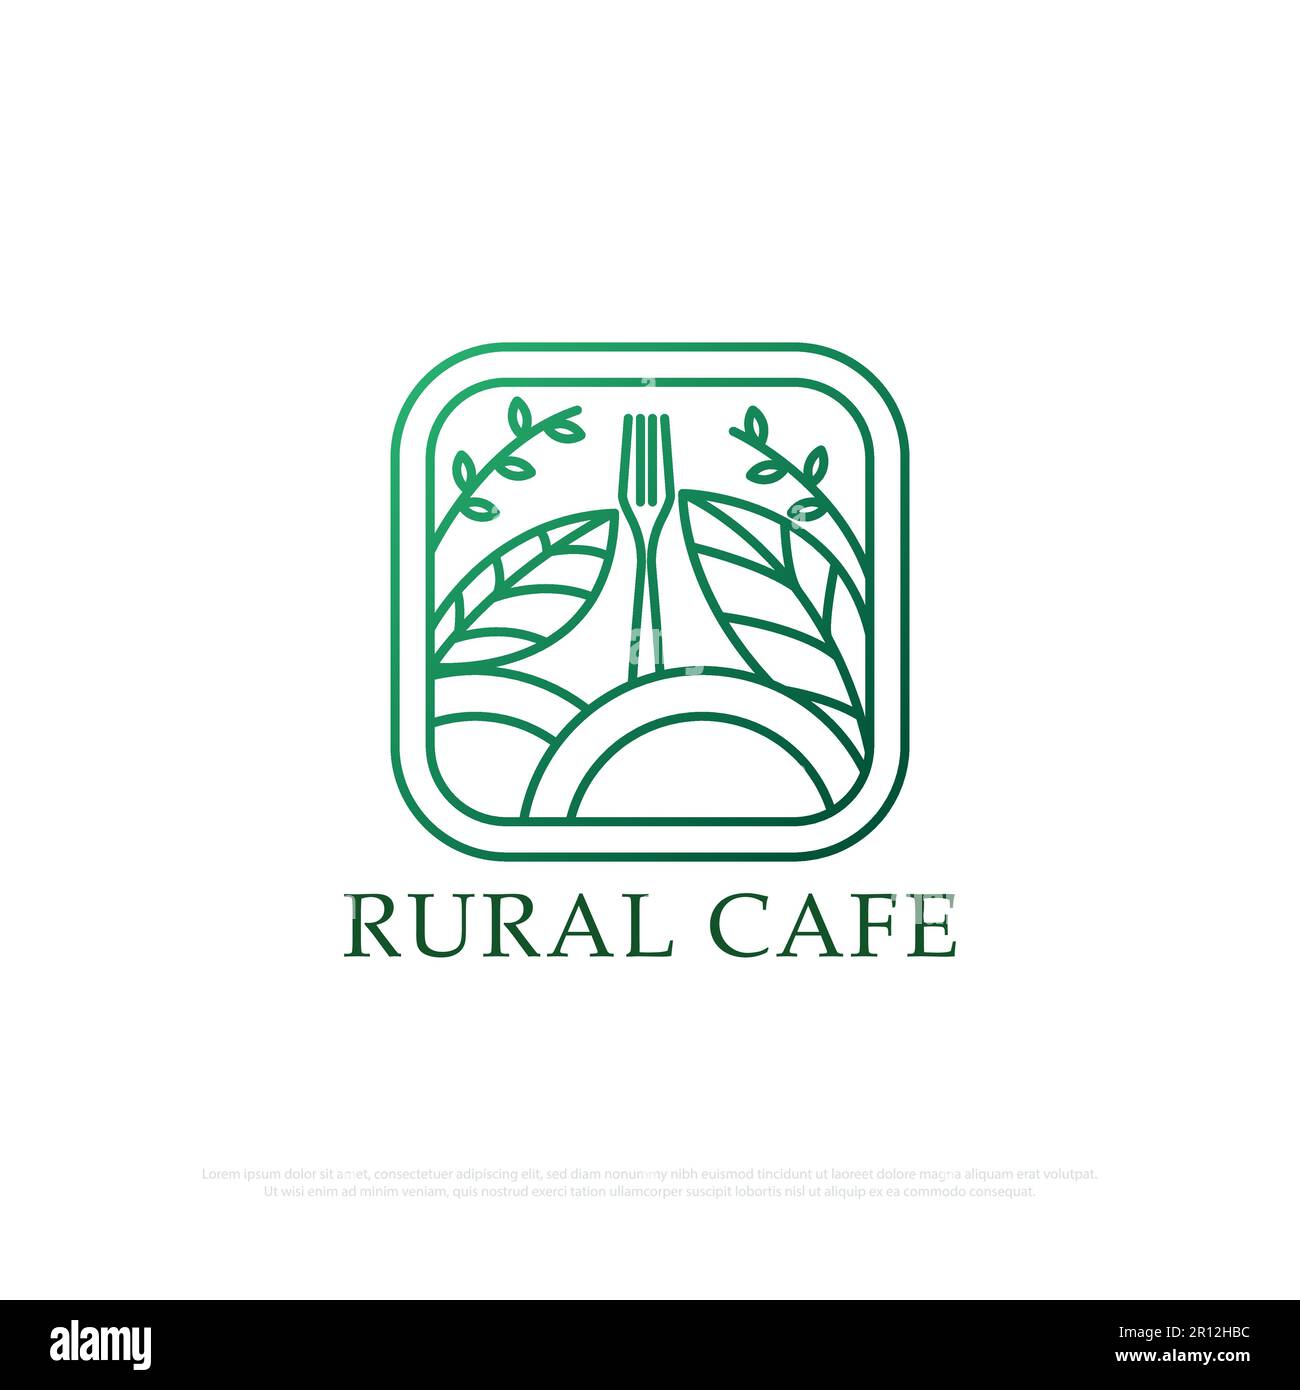 Il tradizionale logo design del ristorante con stile art line, un ristorante con un concetto rurale che fornisce cibo biologico tradizionale e bevande line art Illustrazione Vettoriale